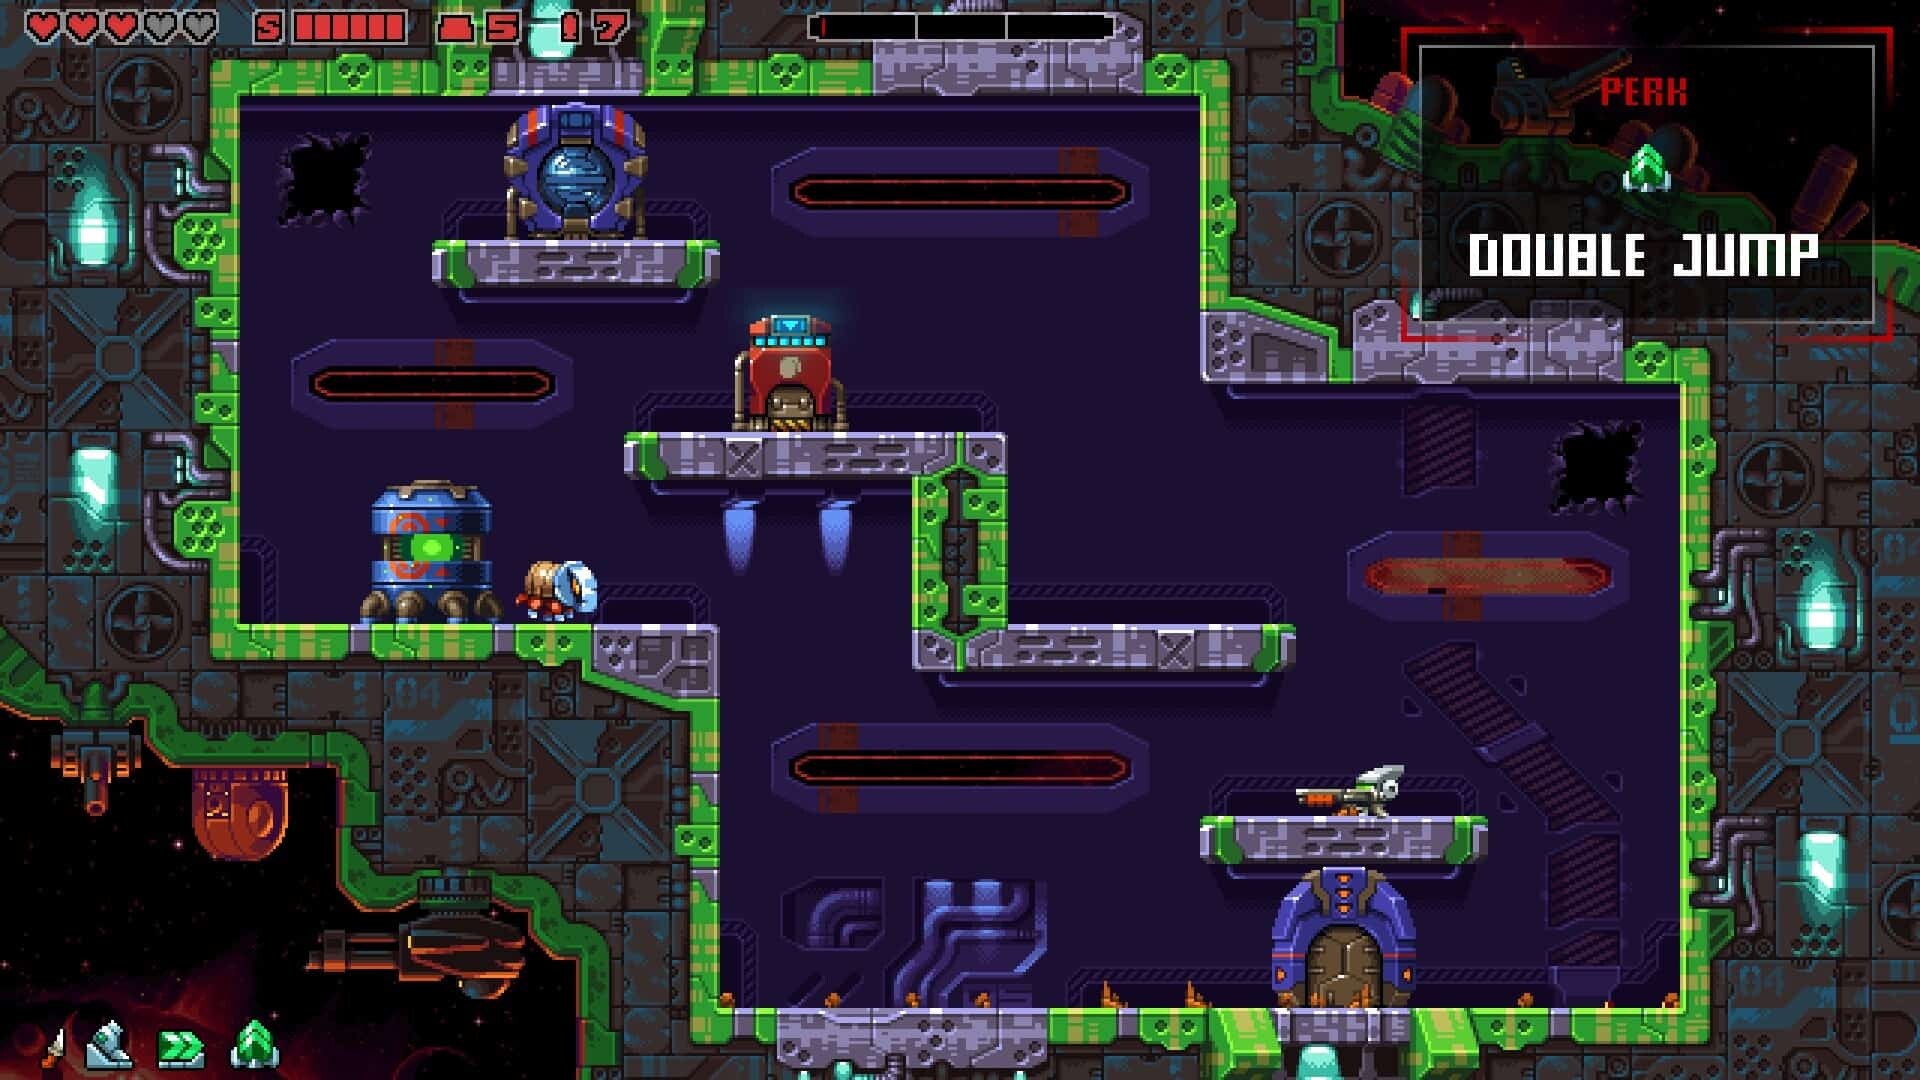 Super Mutant Alien Assault game screenshot, perk